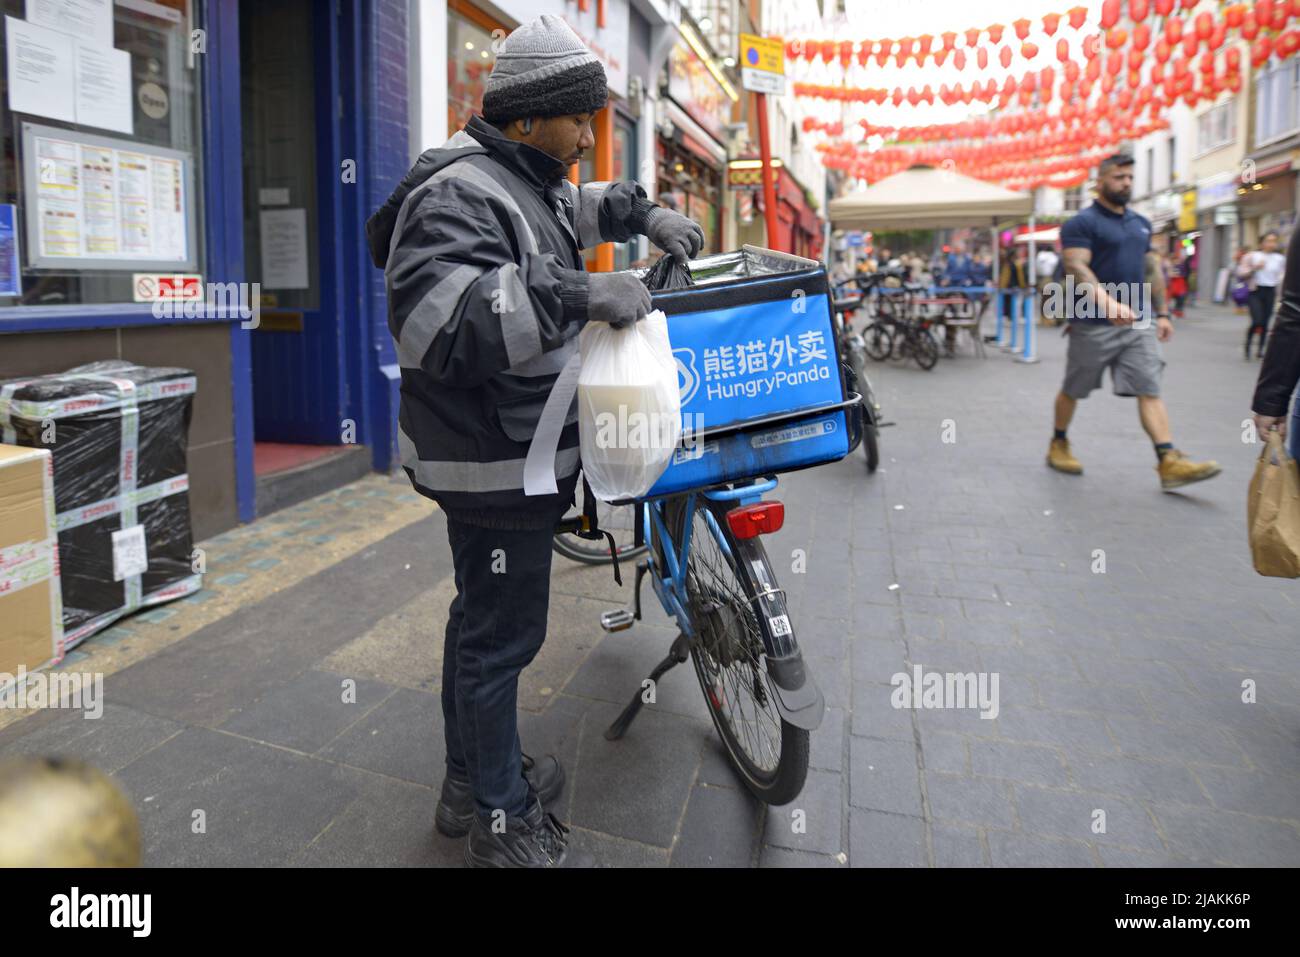 Londres, Angleterre, Royaume-Uni. Pilote de livraison de nourriture Hungry Panda dans Chinatown Banque D'Images